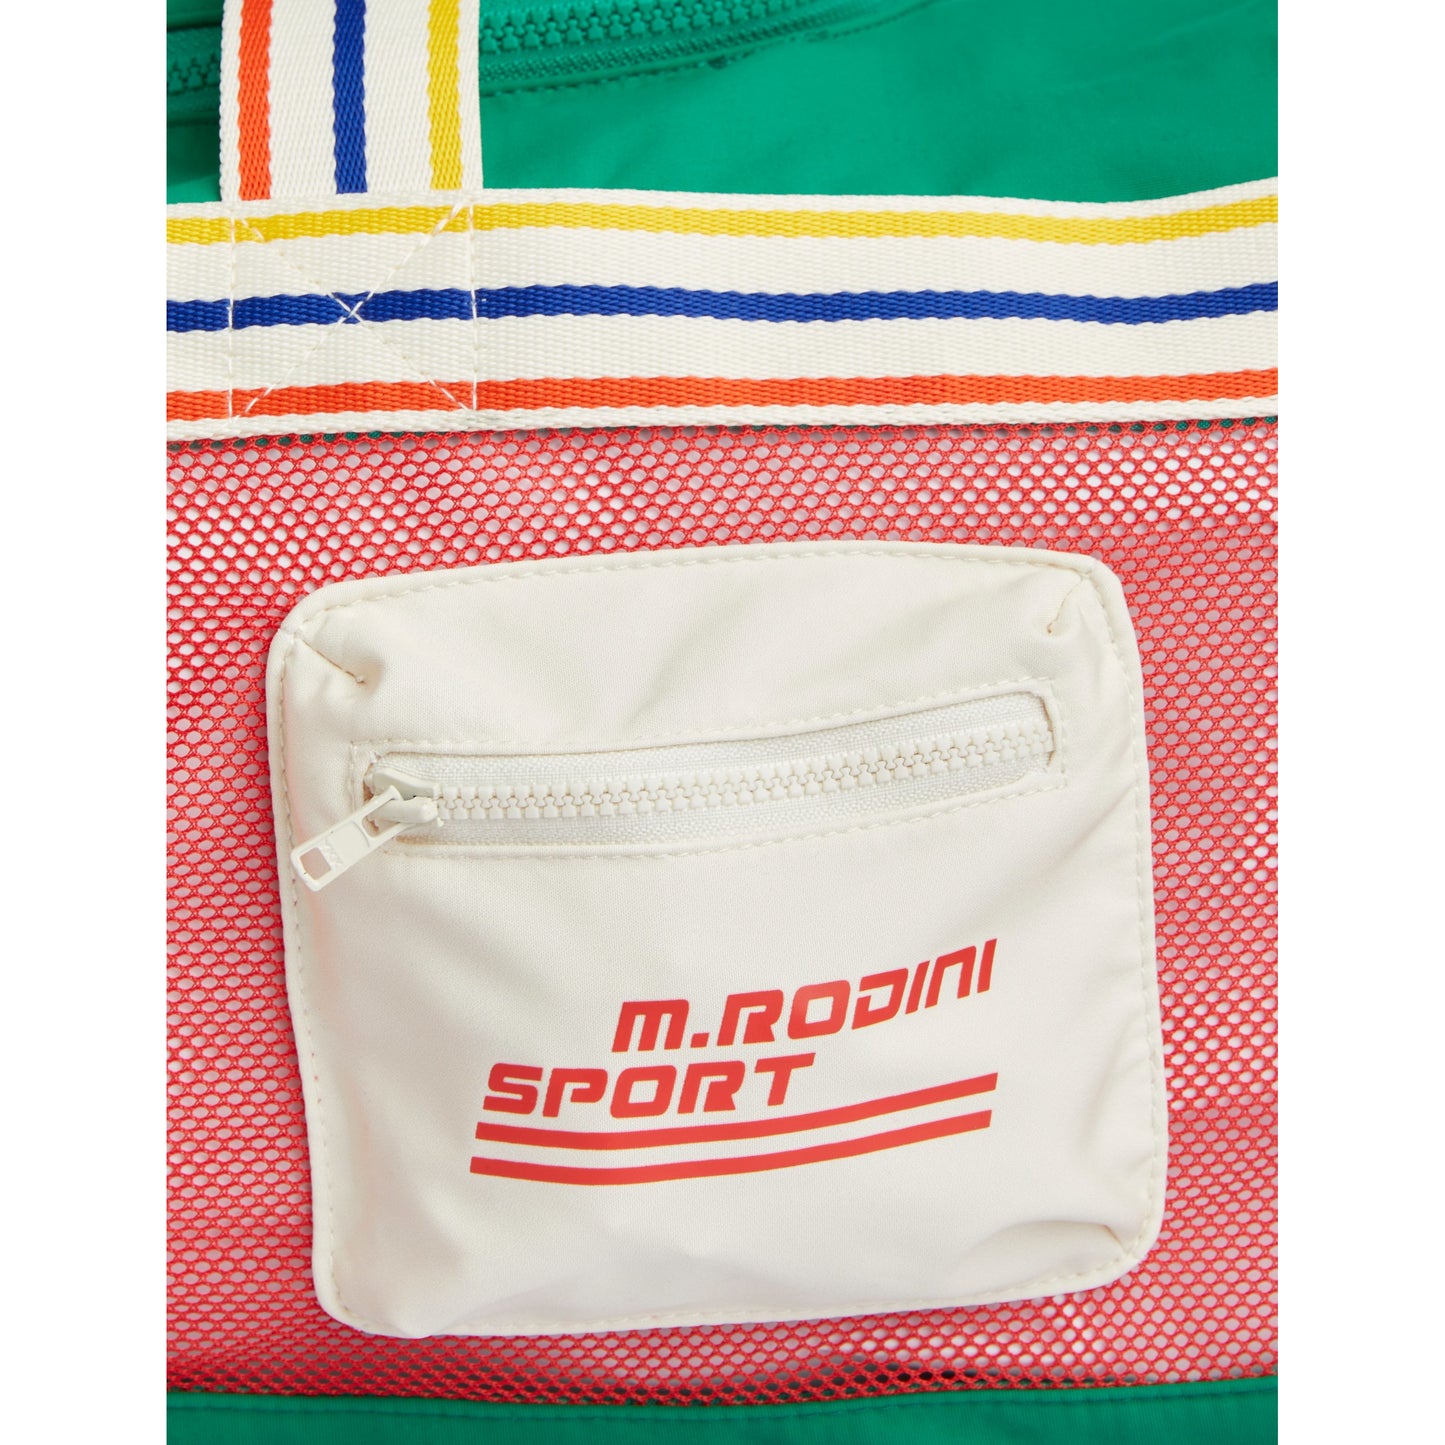 MINI RODINI M.Rodini Sport Duffel Bag